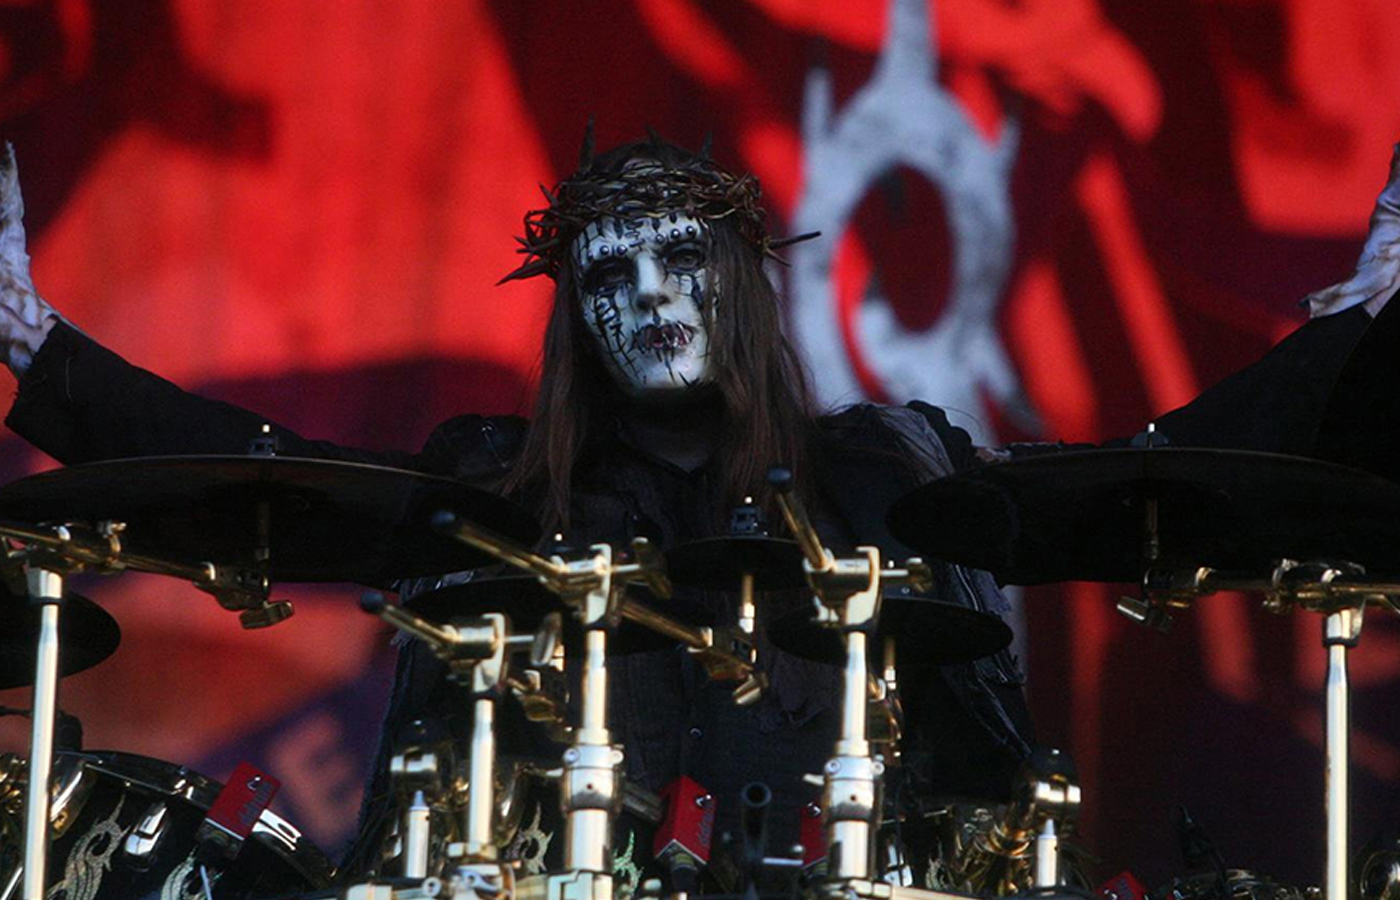 Joey-Jordison-Dies-At-46